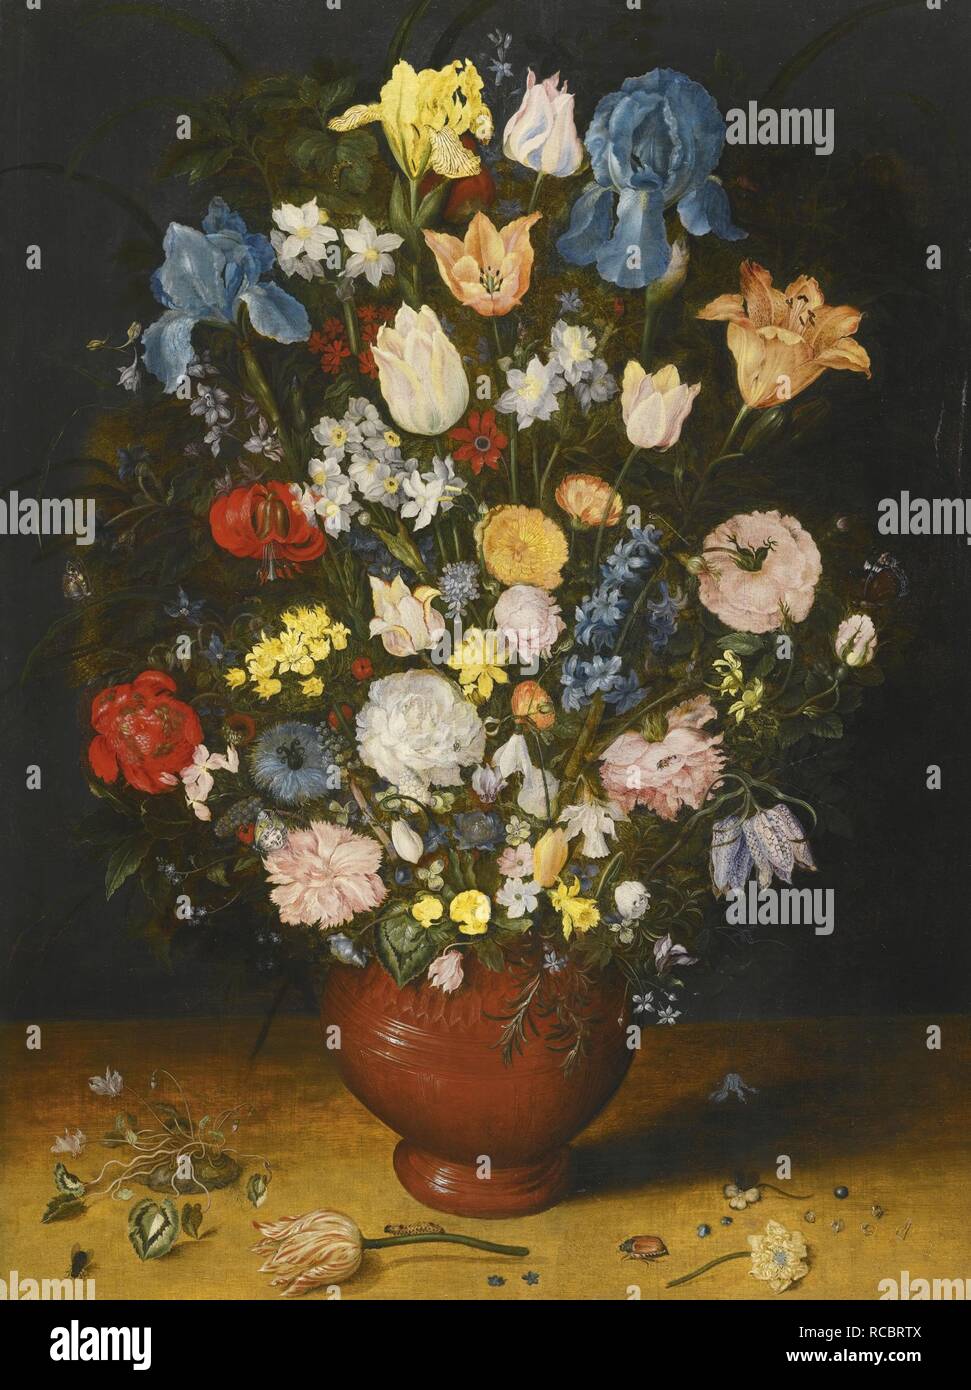 Nature morte avec roses, iris, tulipes, narcisses et dans un vase en céramique. Musée : collection privée. Auteur : Brueghel l'Ancien, jan. Banque D'Images